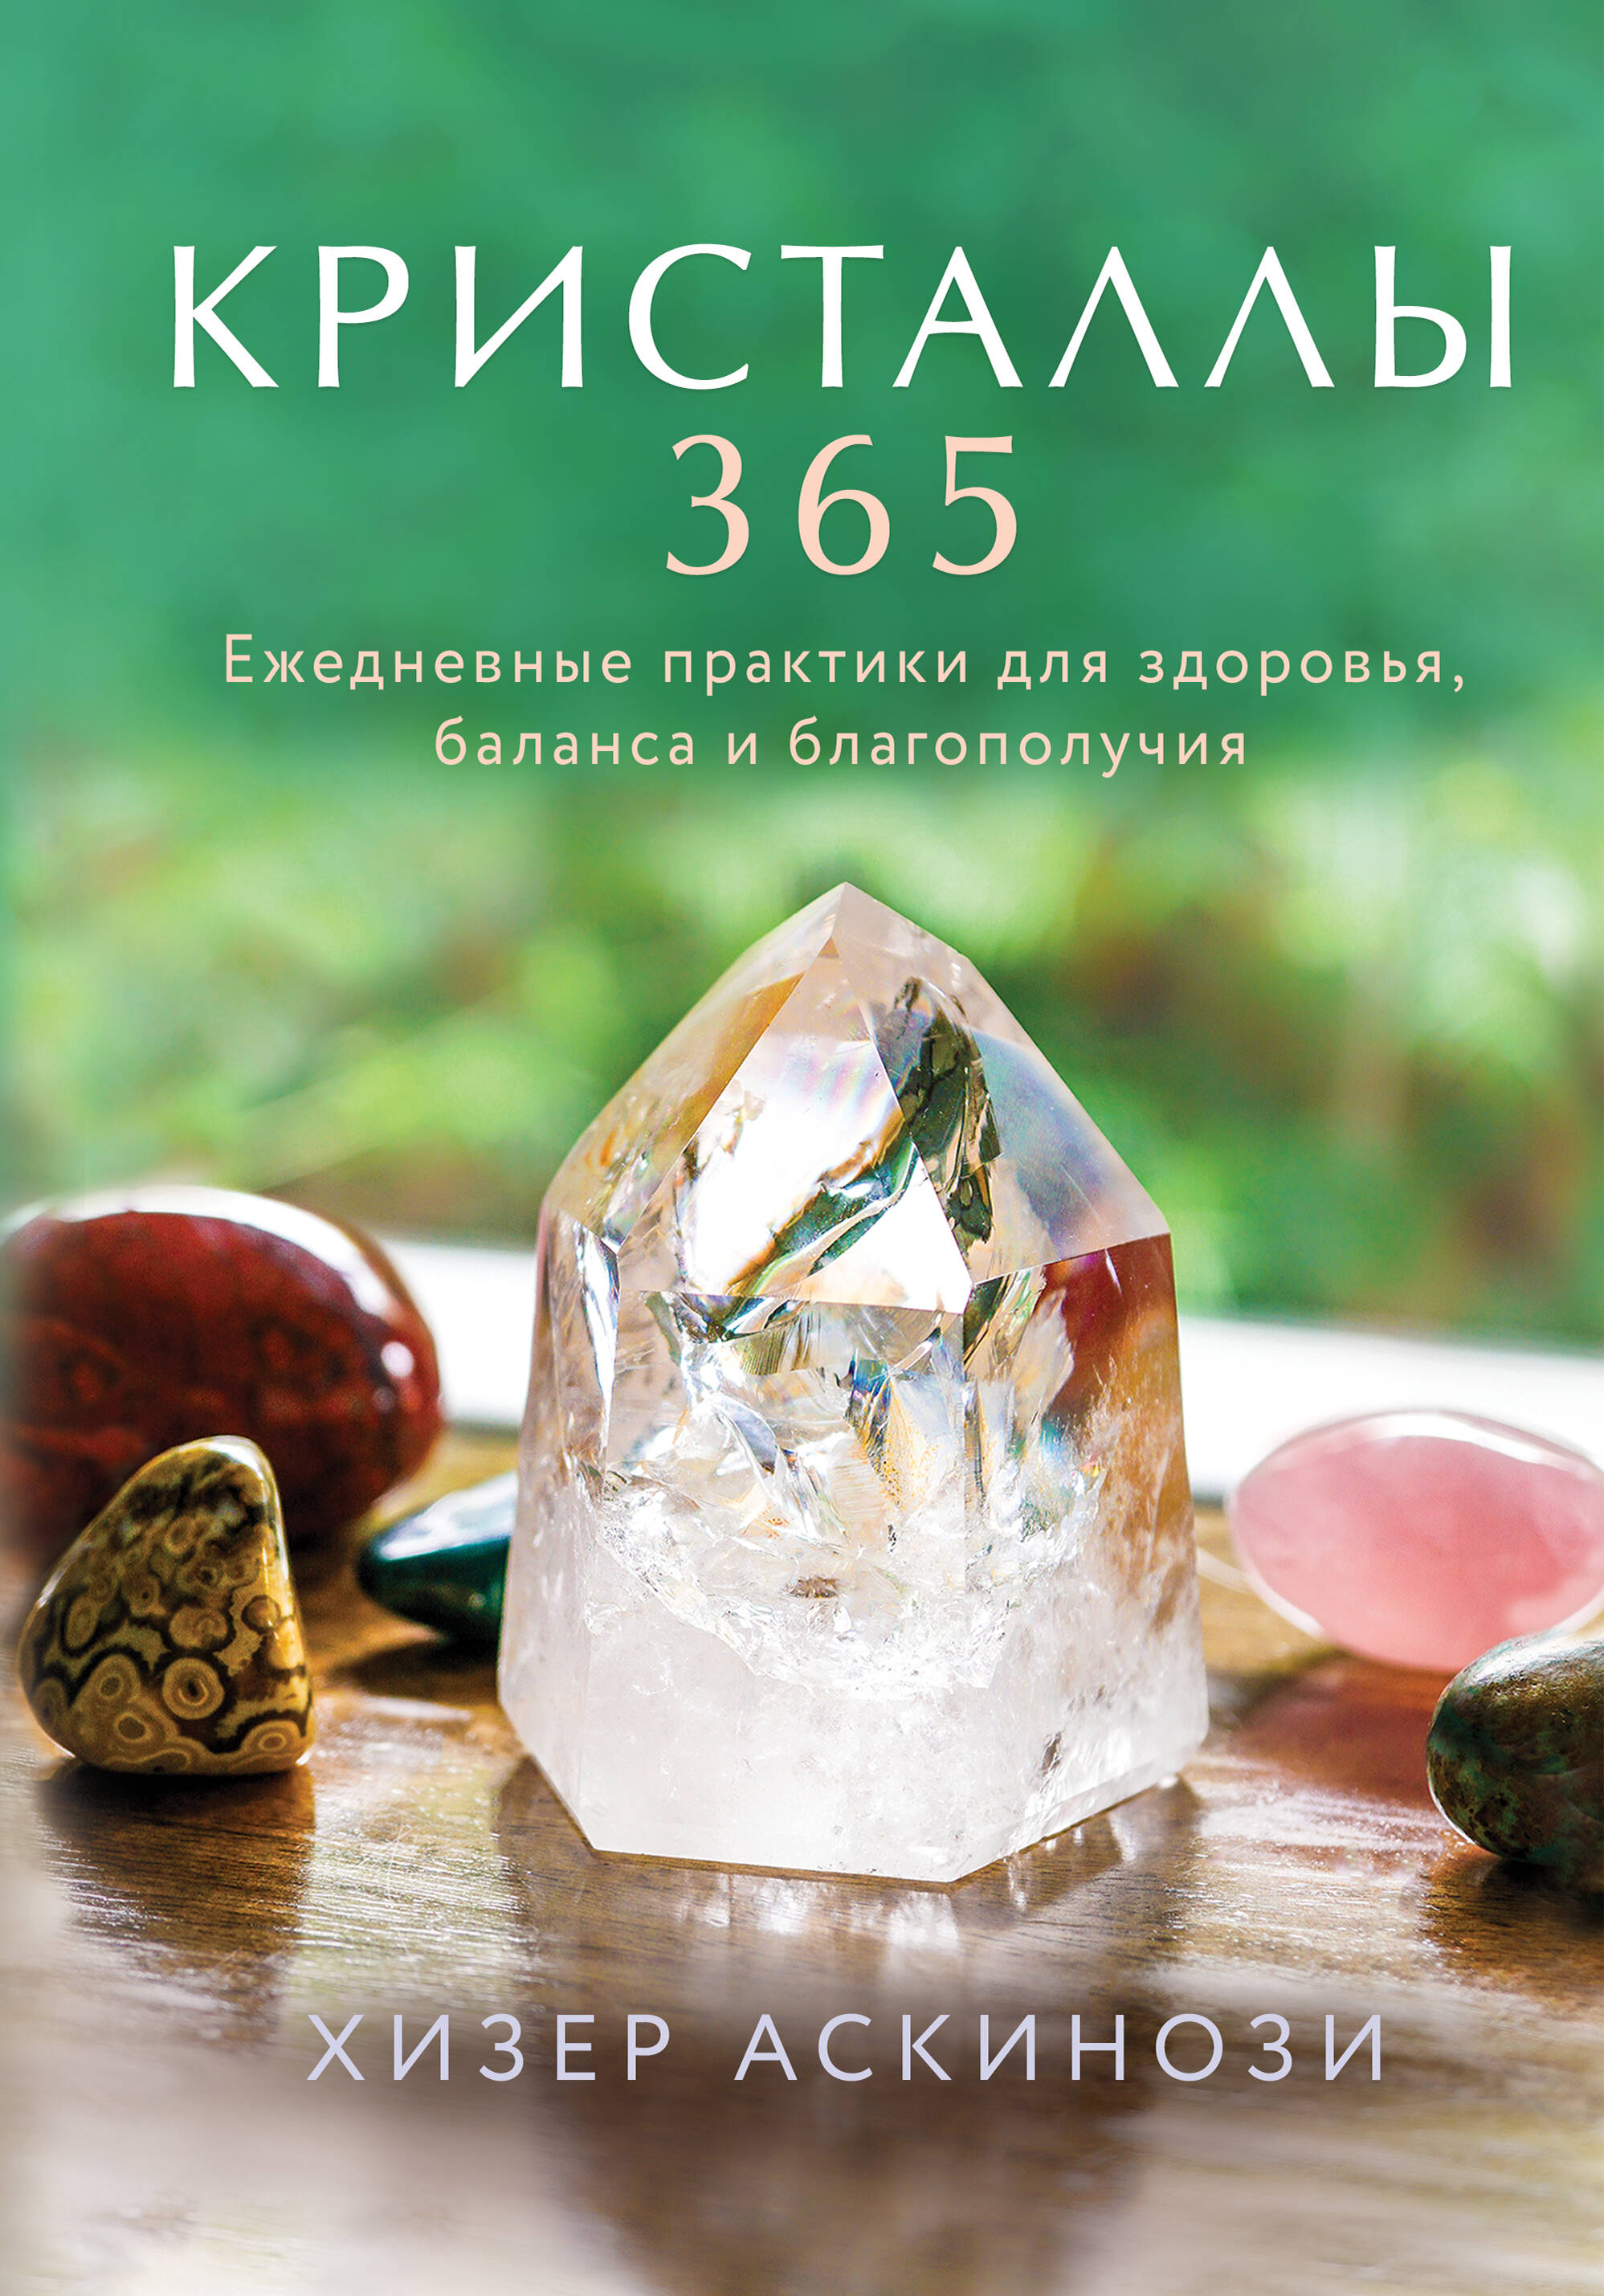 книга энергия кристаллов Кристаллы 365. Ежедневные практики для здоровья, баланса и благополучия